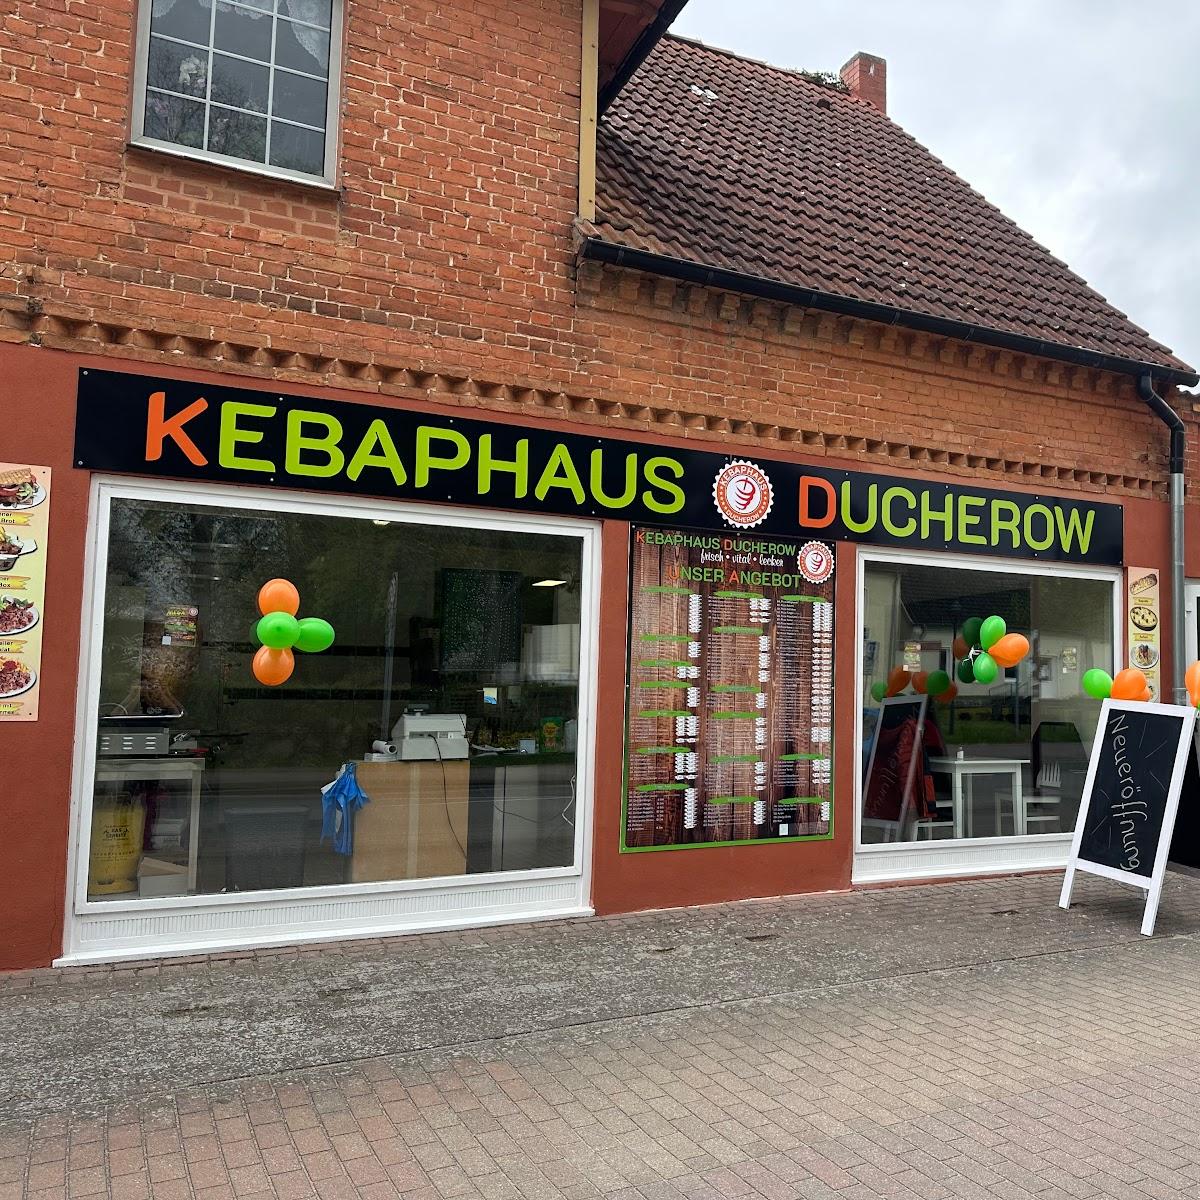 Restaurant "Kebaphaus" in Ducherow